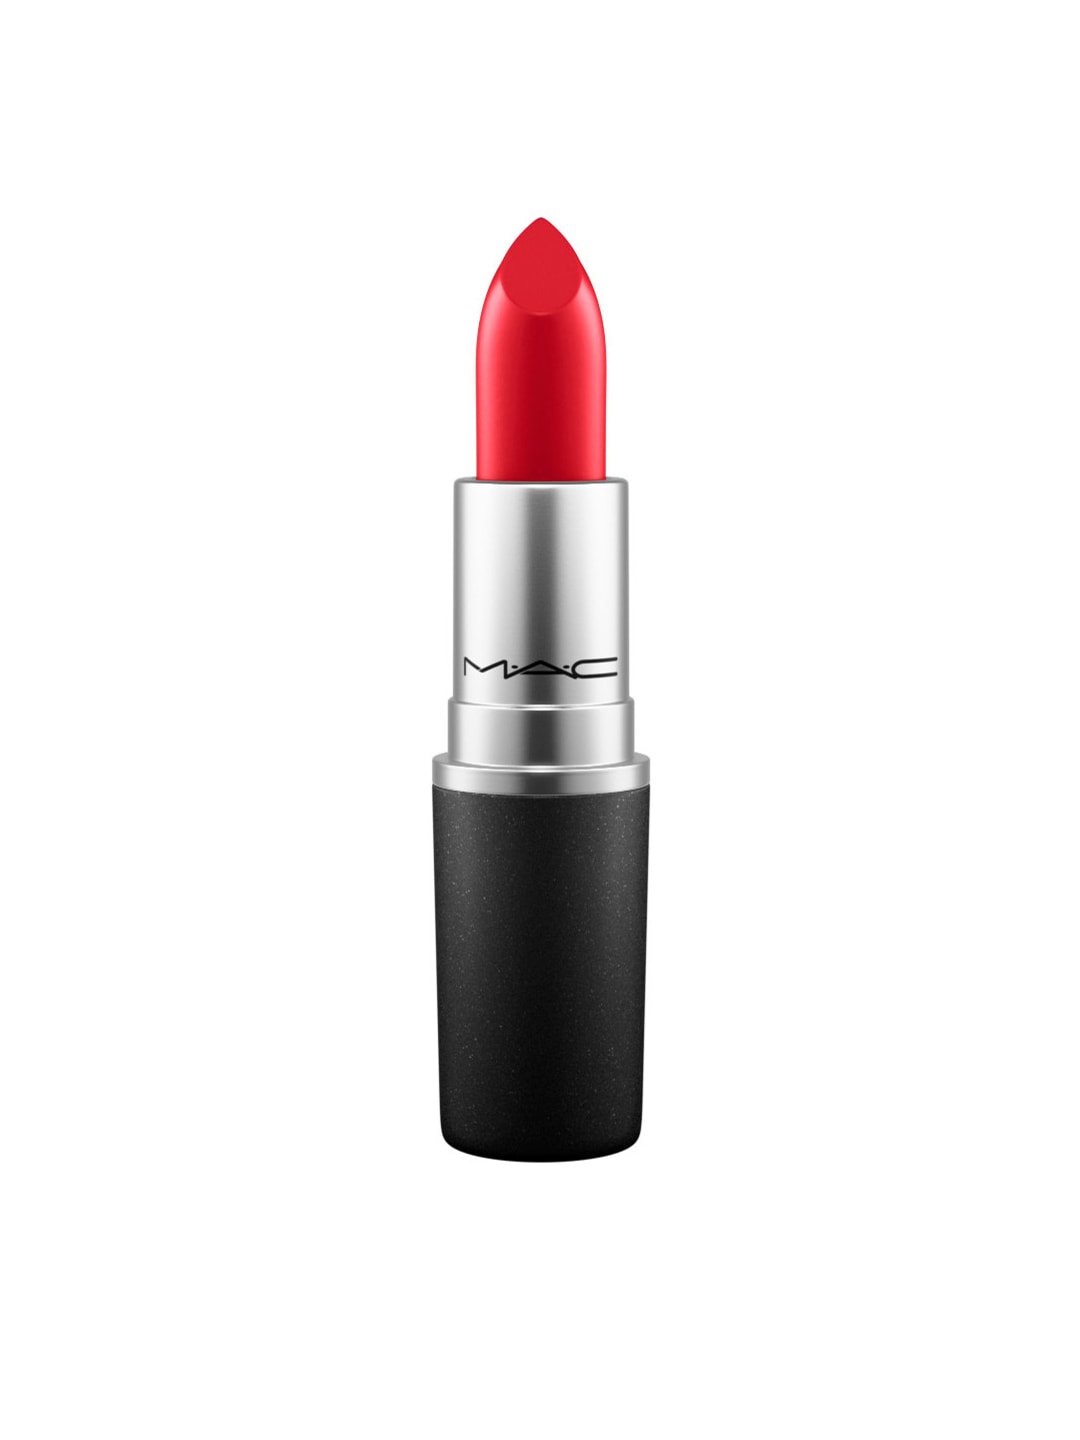 M.A.C Satin Lipstick MAC - Red 3g Price in India